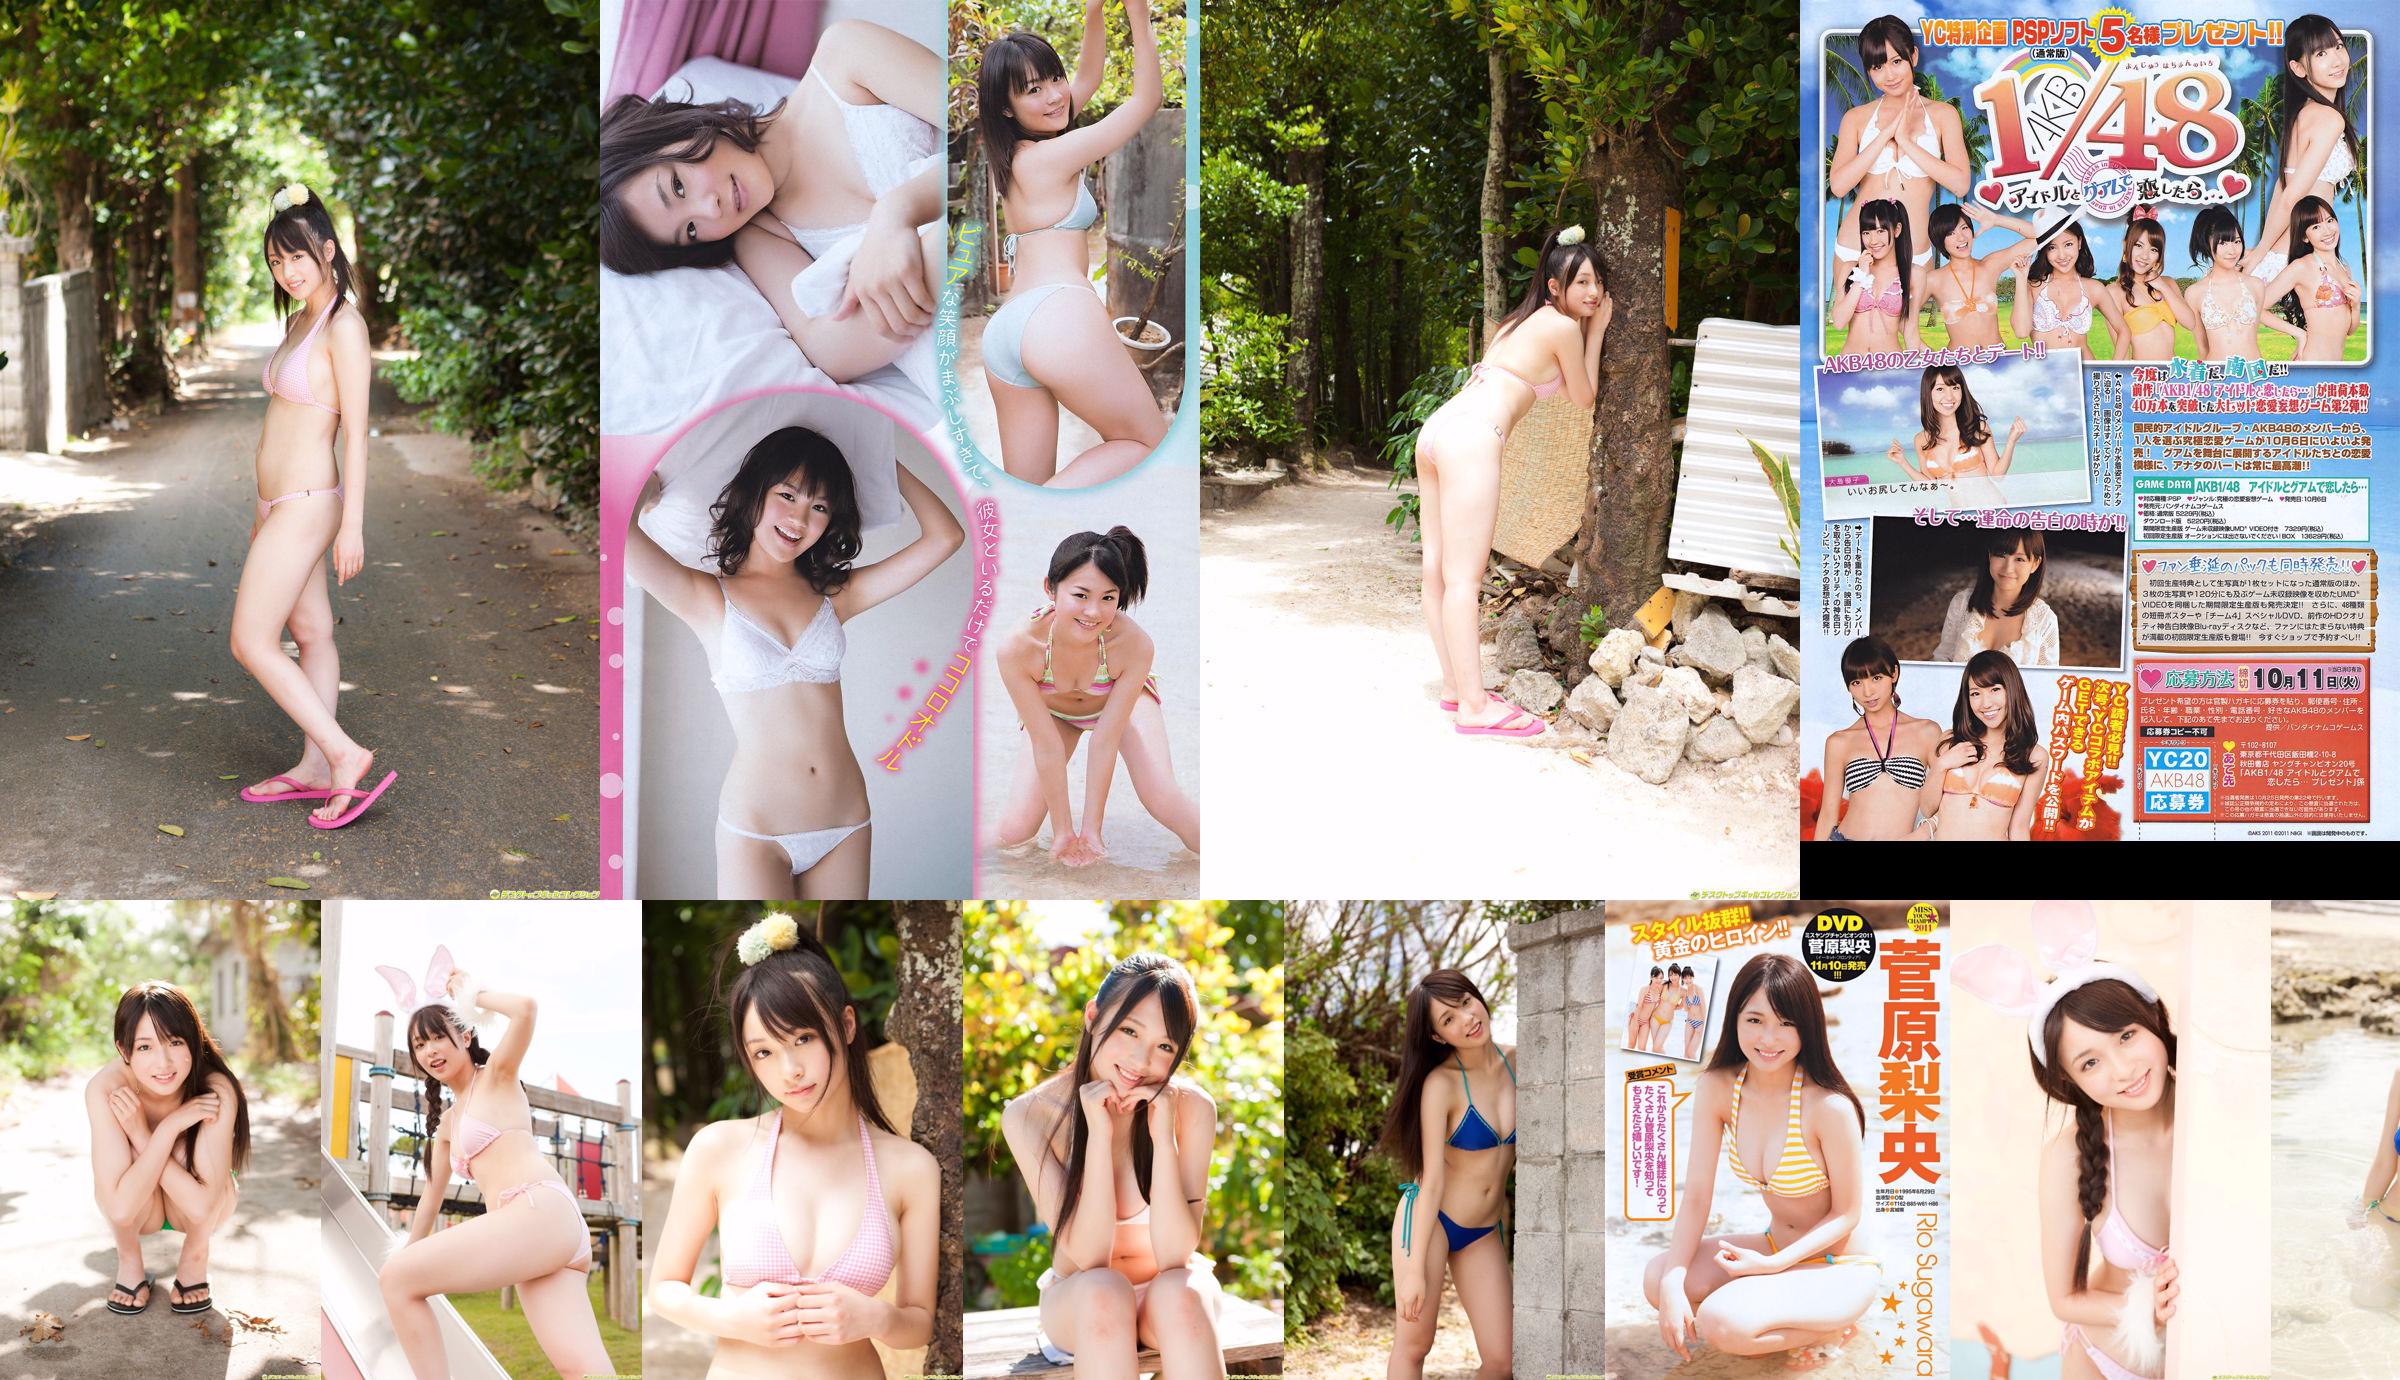 [Young Champion] Sugawara Risa, Horikawa Mikako, Matsushima no か 2011 No. 20 Photo Magazine No.3ca34f Page 2